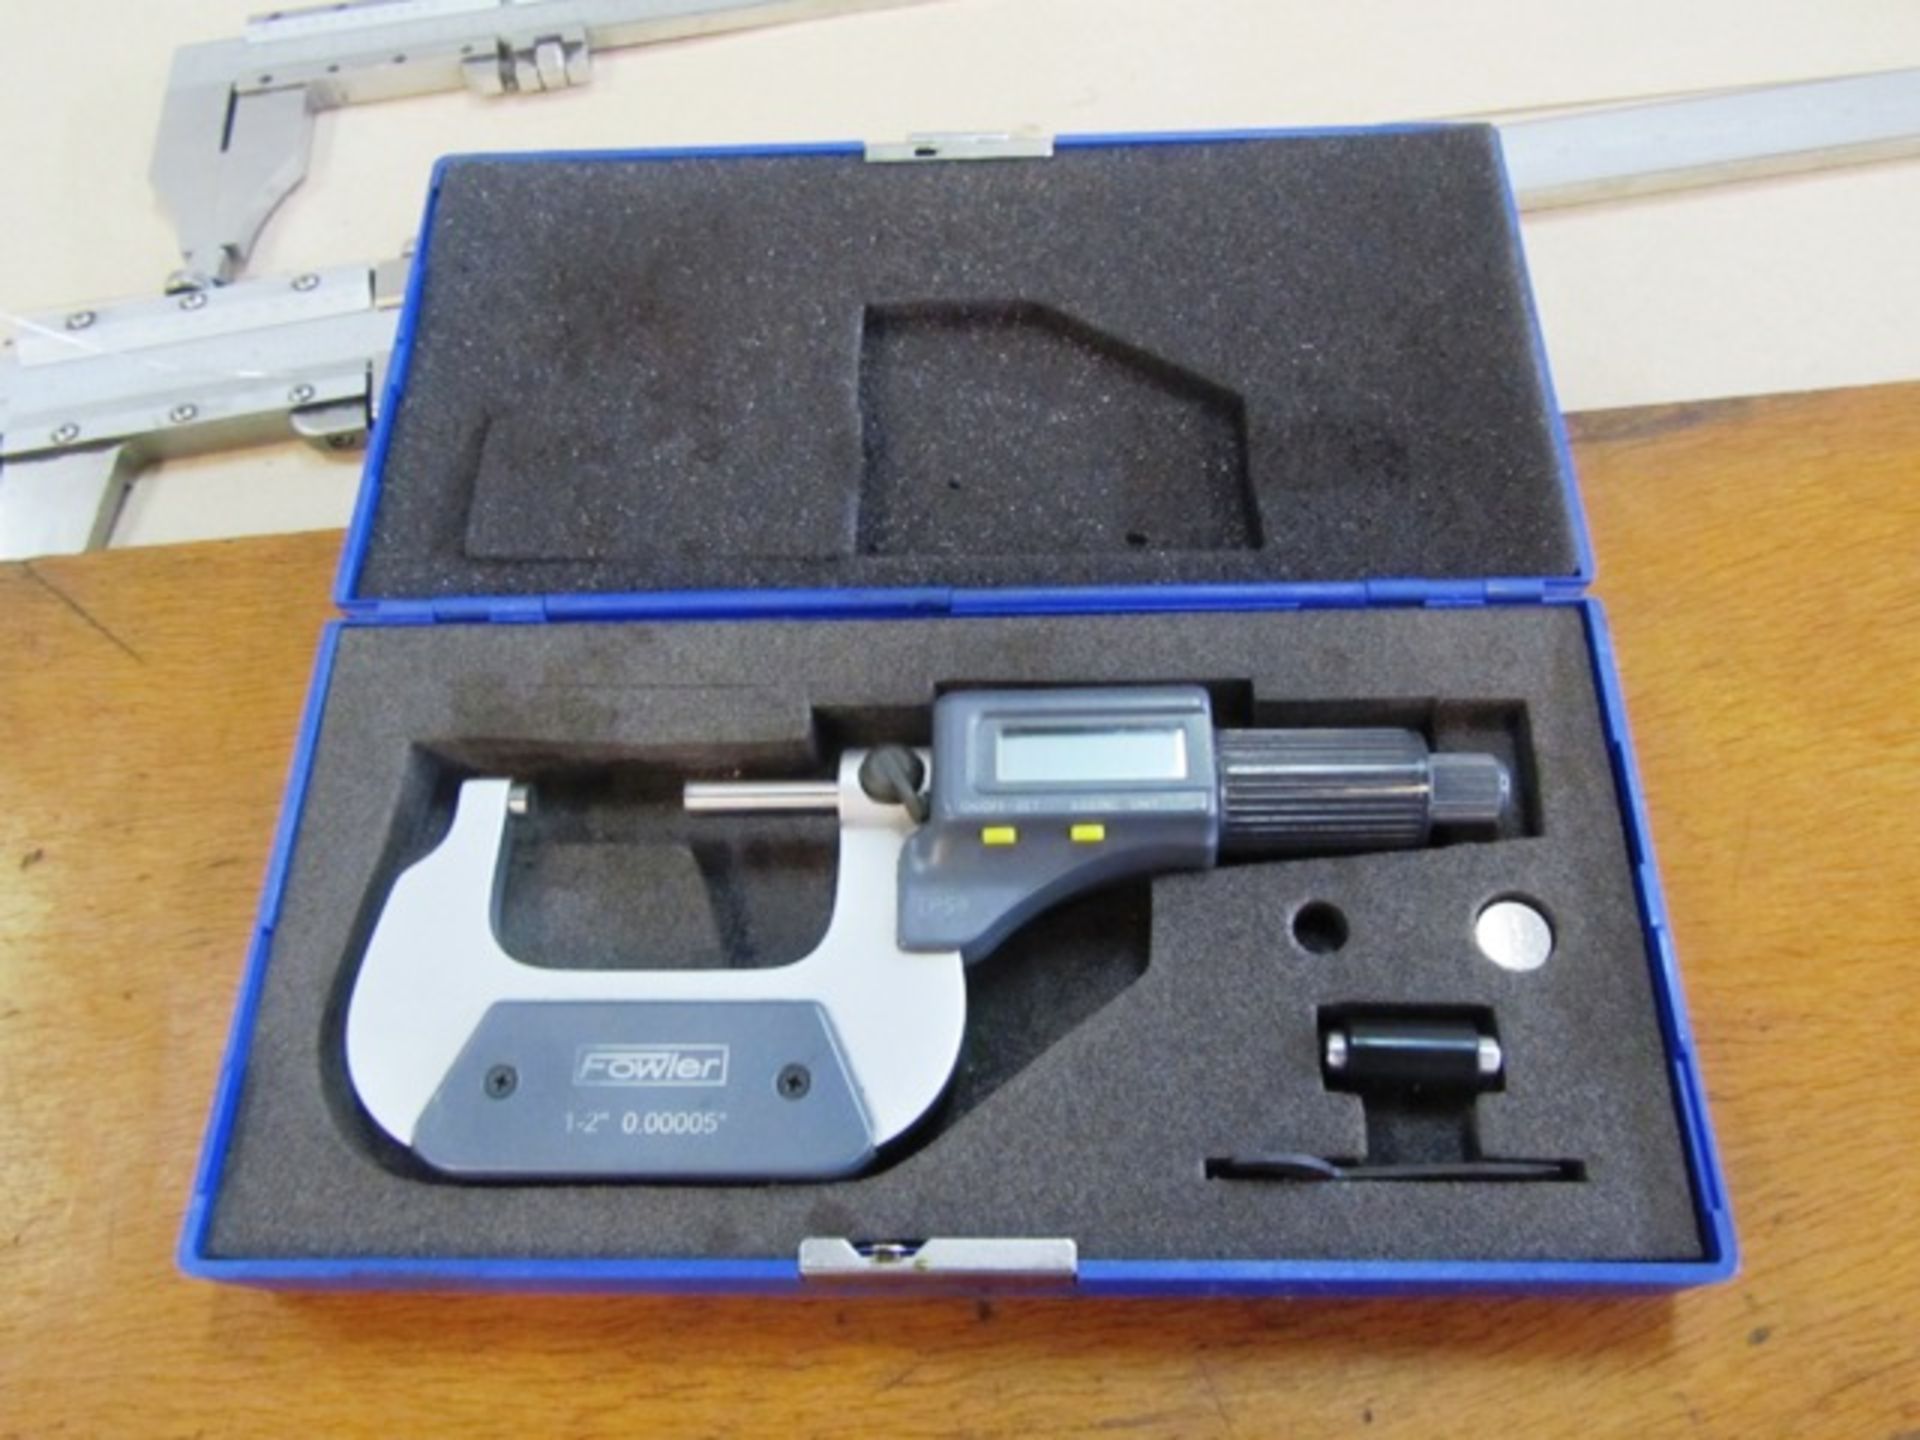 Fowler 1''-2' Digital Micrometer